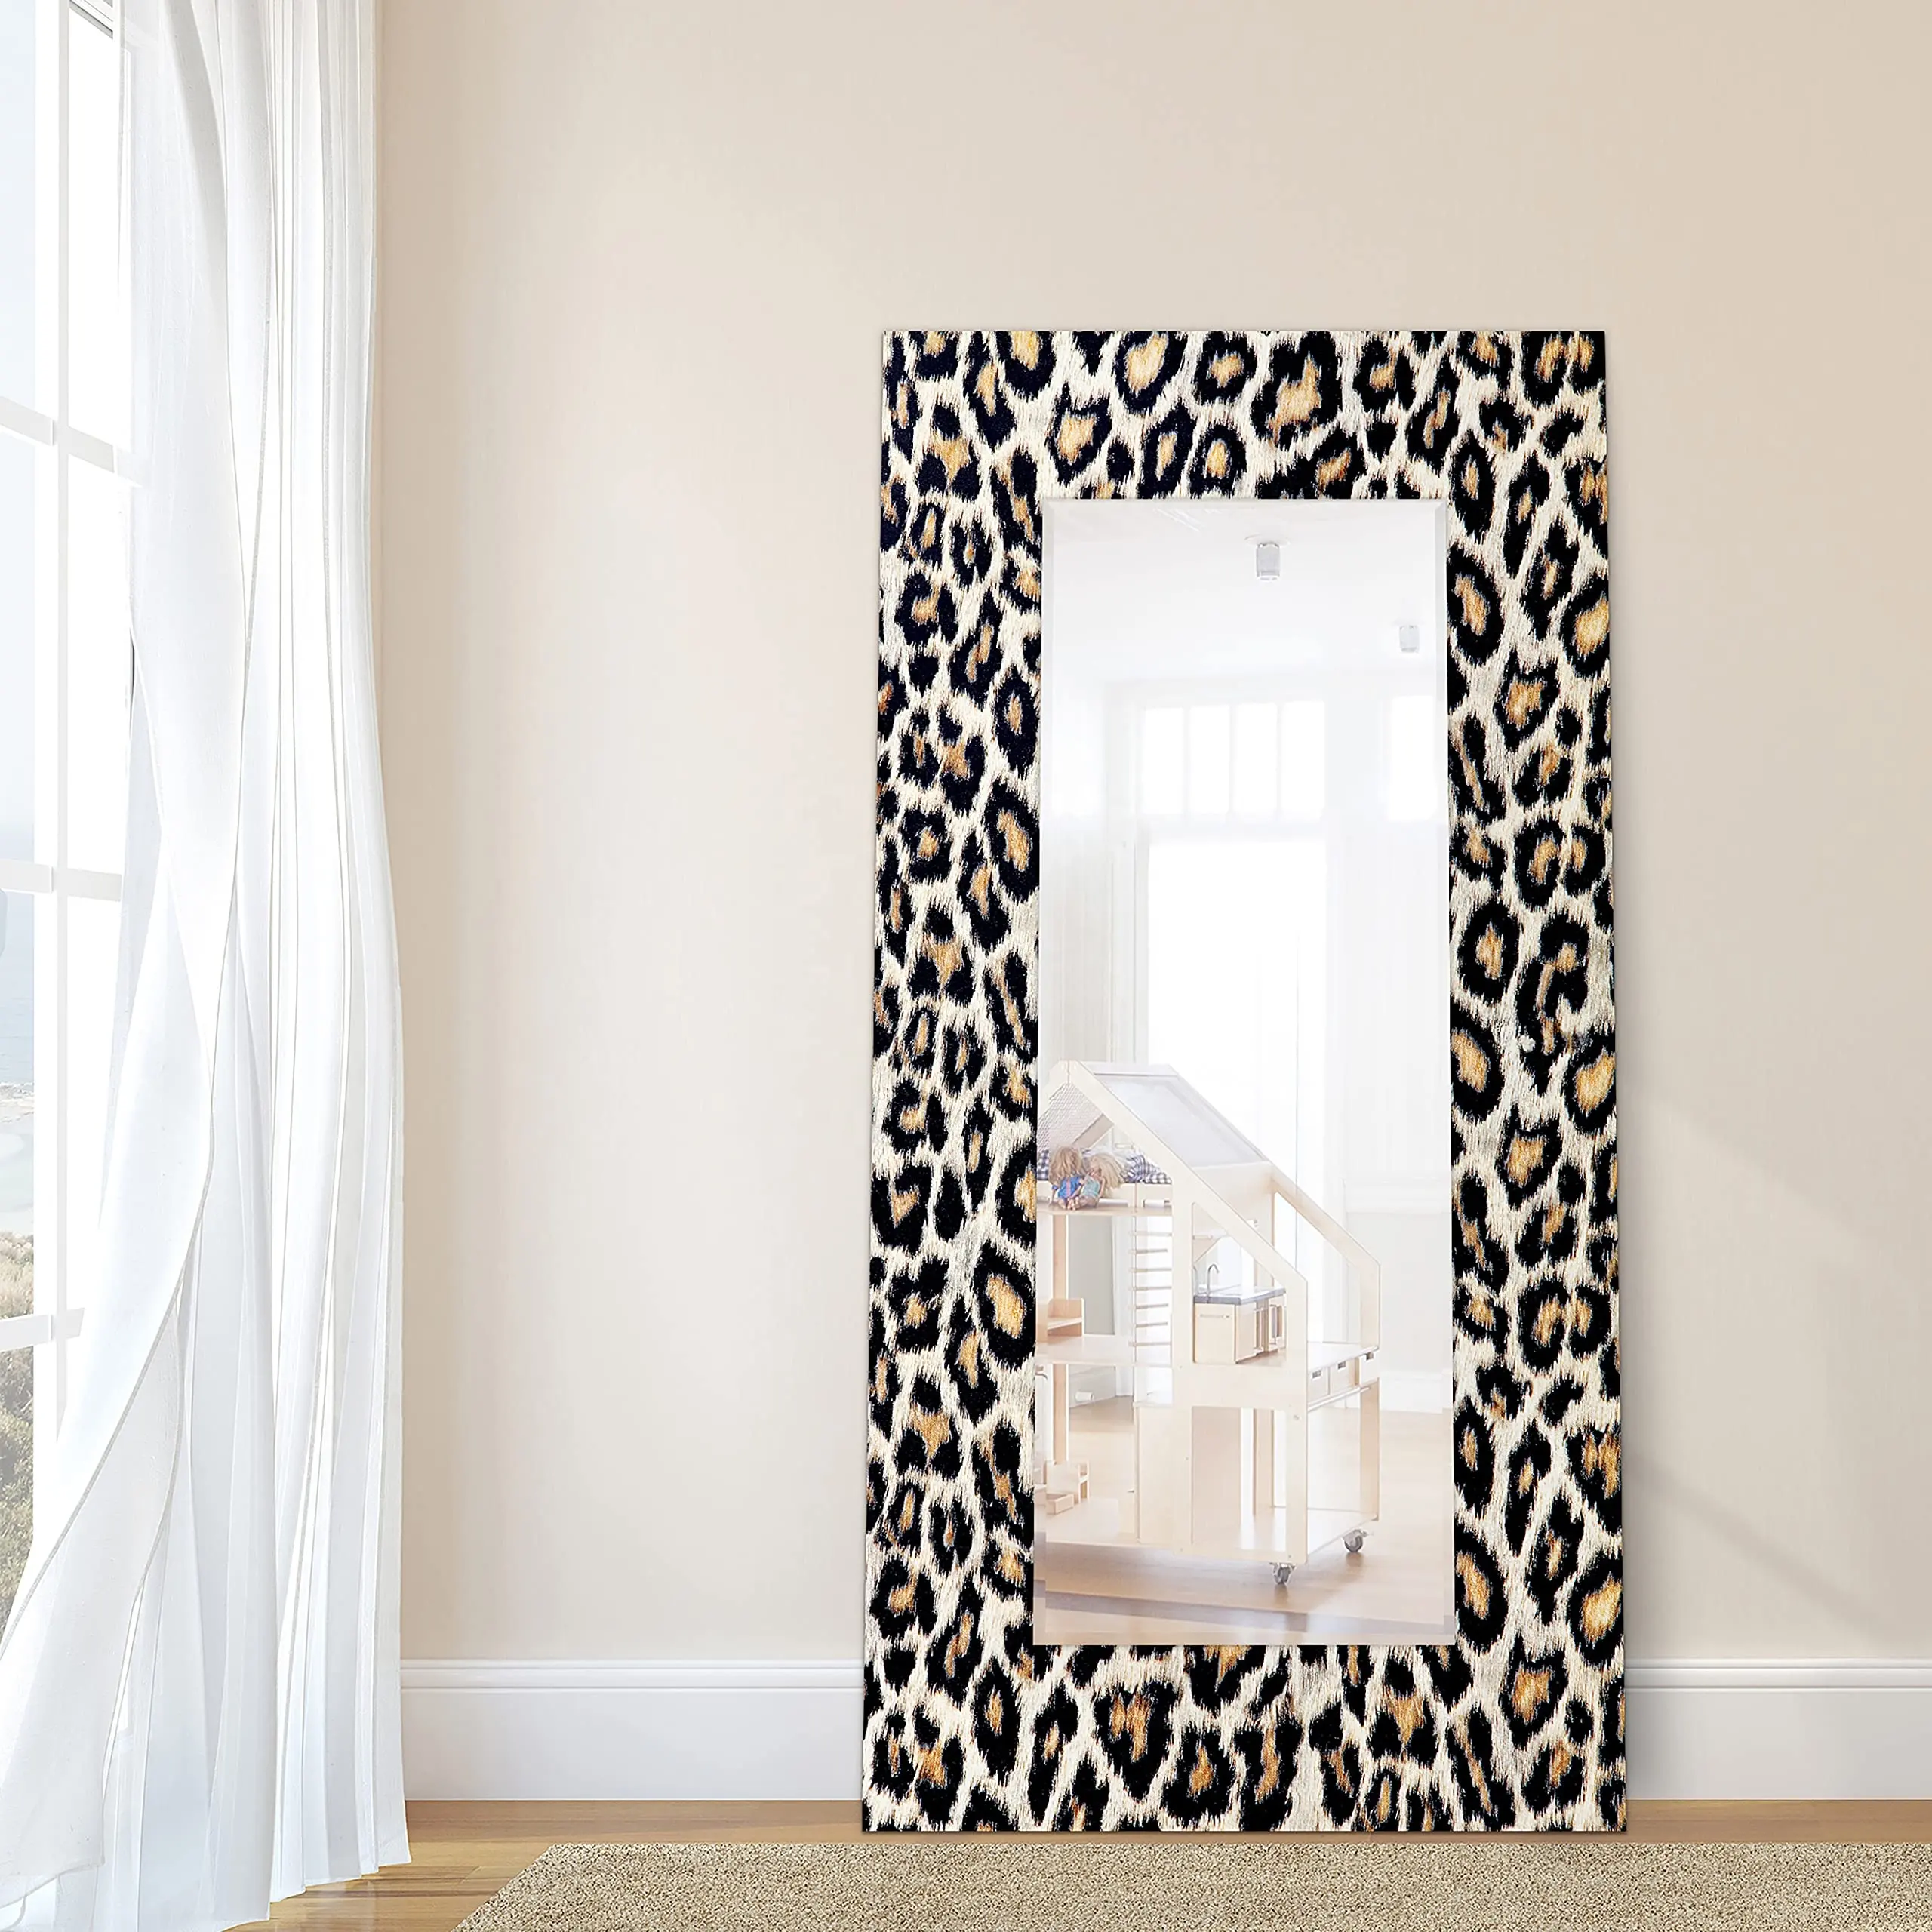 Leopardo espelho de vidro temperado grande e longo para decoração de parede, espelho de vaidade para maquiagem, espelho de chão para sala de estar de luxo